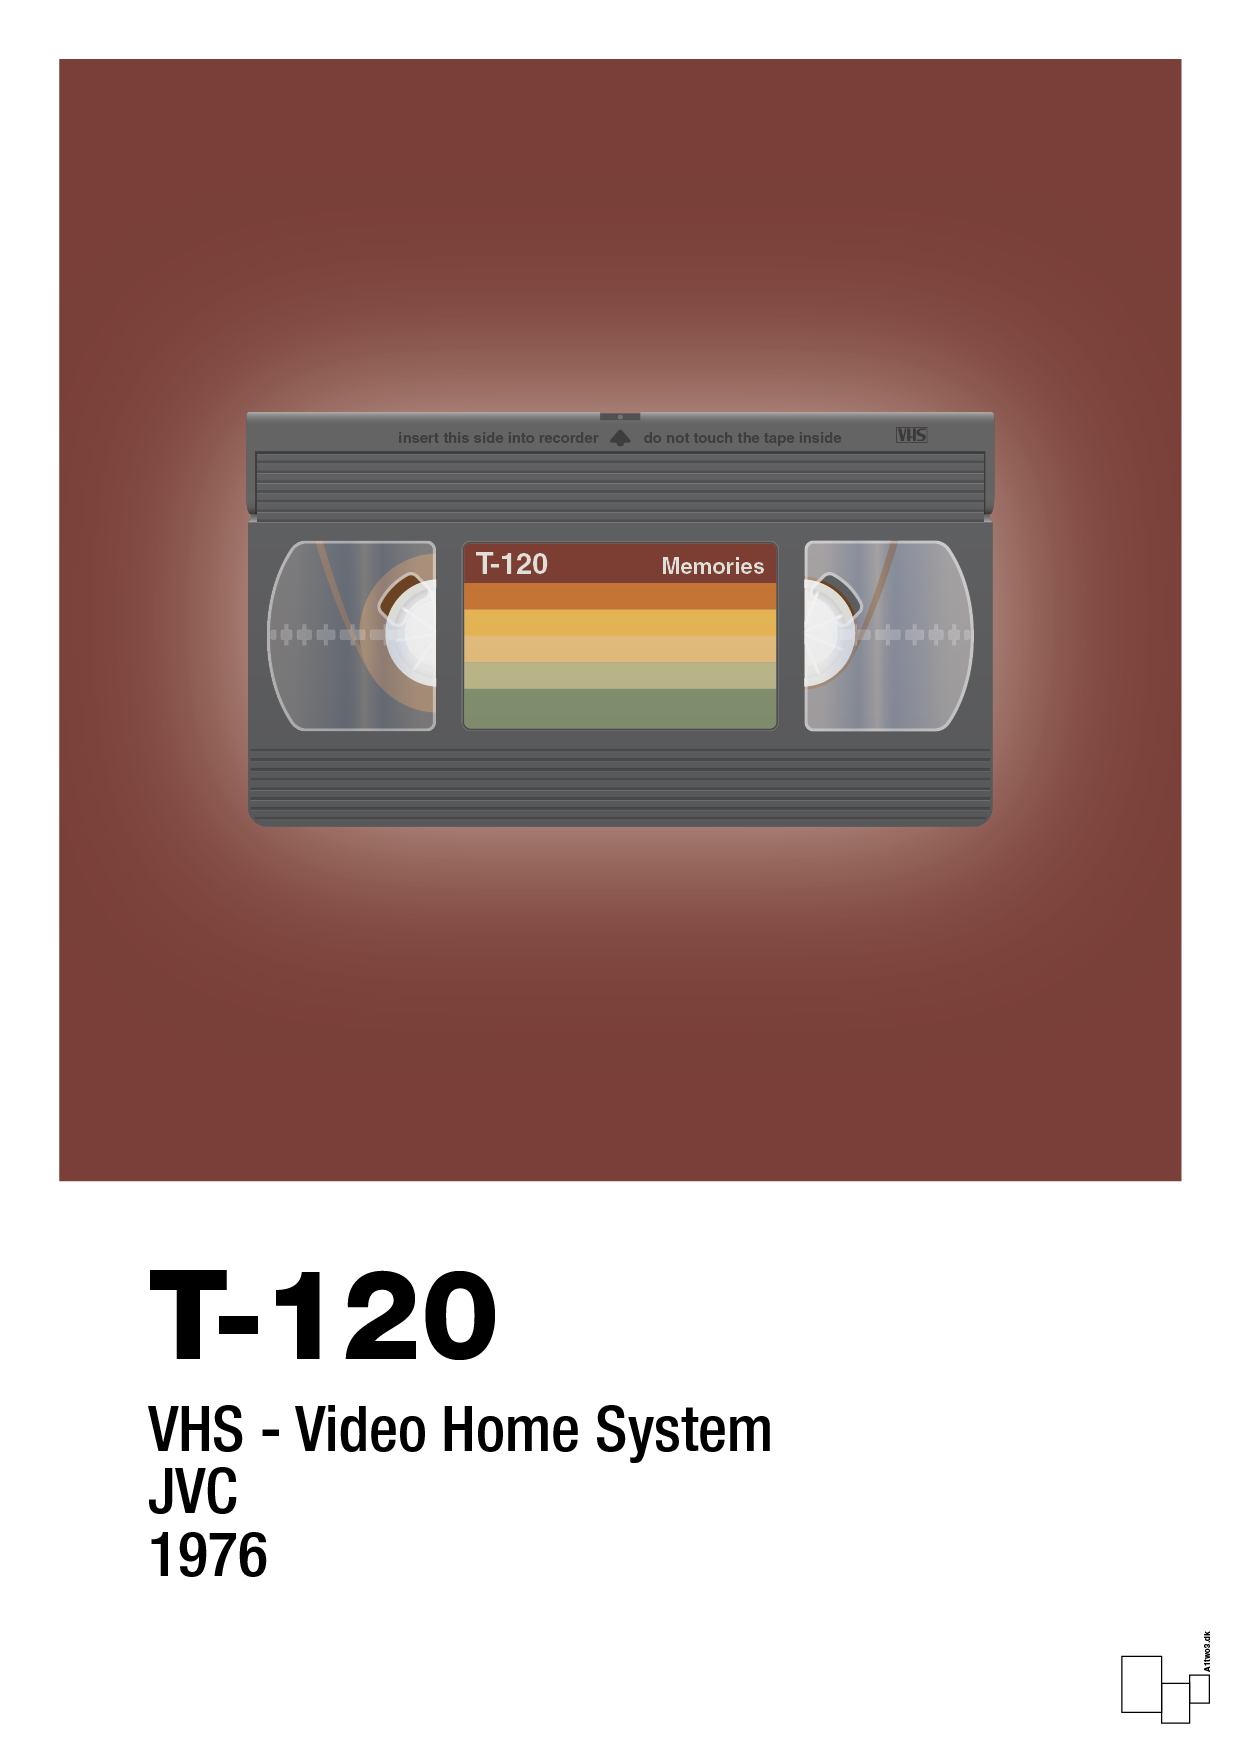 videobånd t-120 - Plakat med Grafik i Red Pepper